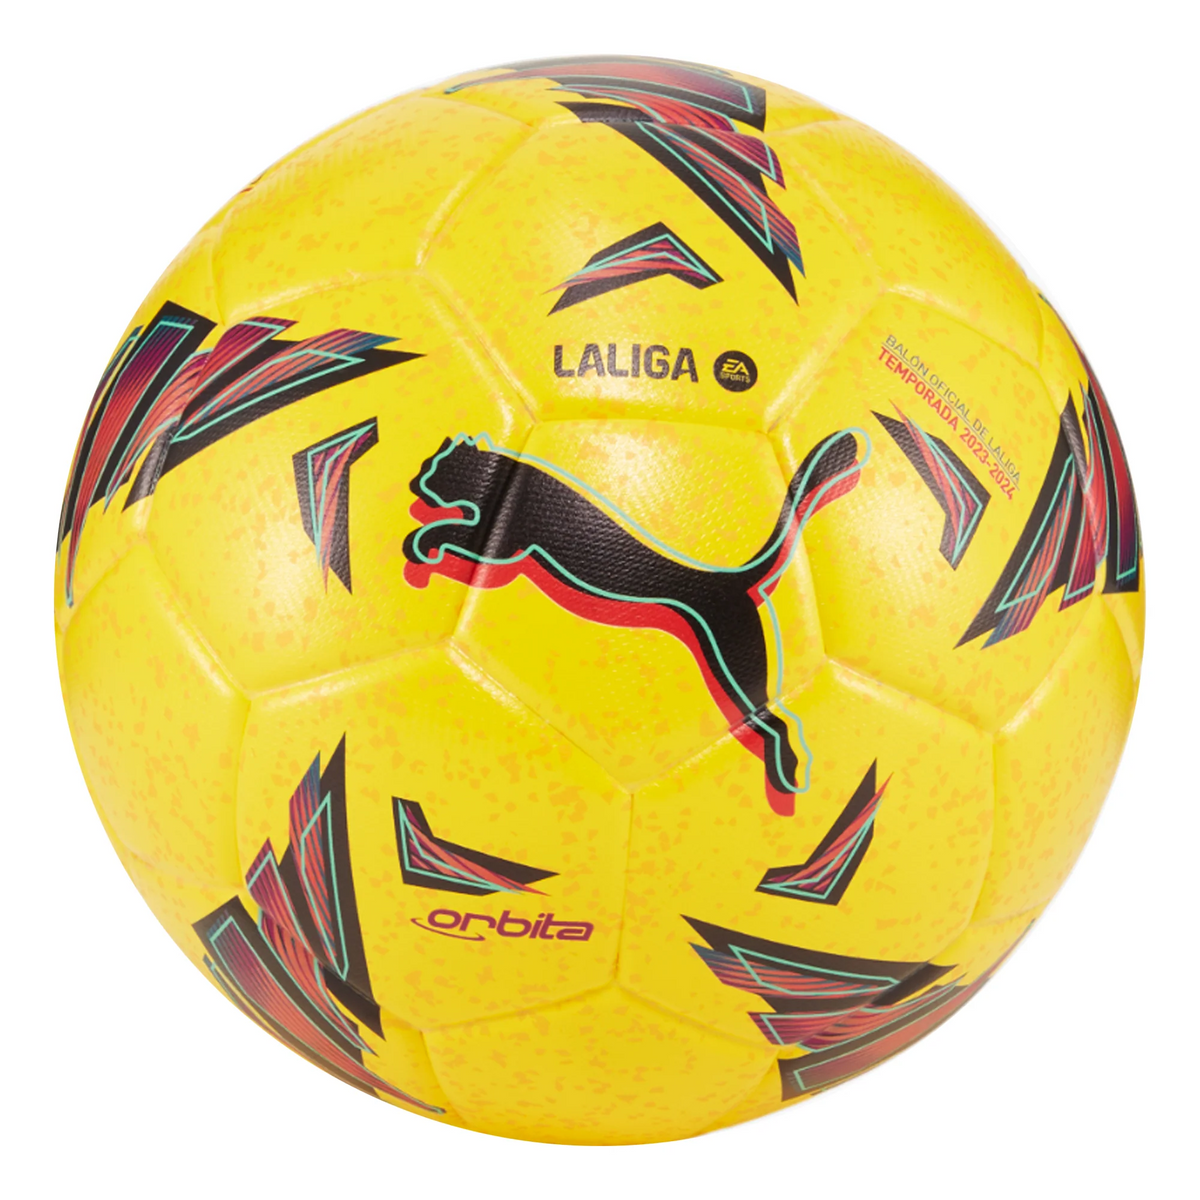 PUMA Orbita La liga 1 Balón de fútbol